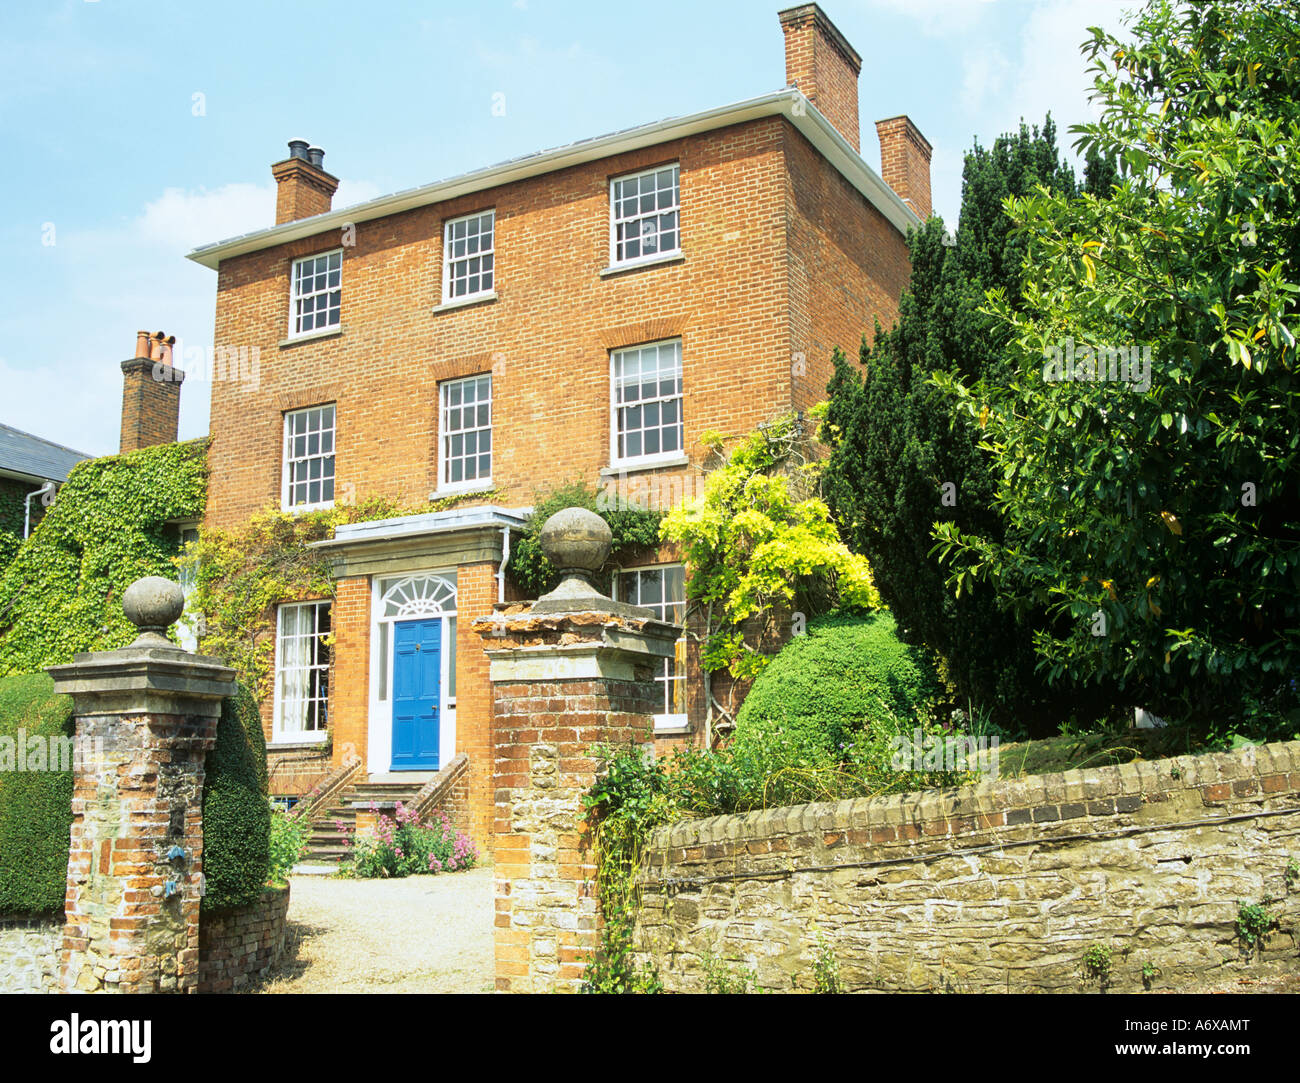 GUILDFORD SURREY UK juin l'ancienne maison de Lewis Carroll, de son vrai nom Charles Dodgson Rev Banque D'Images